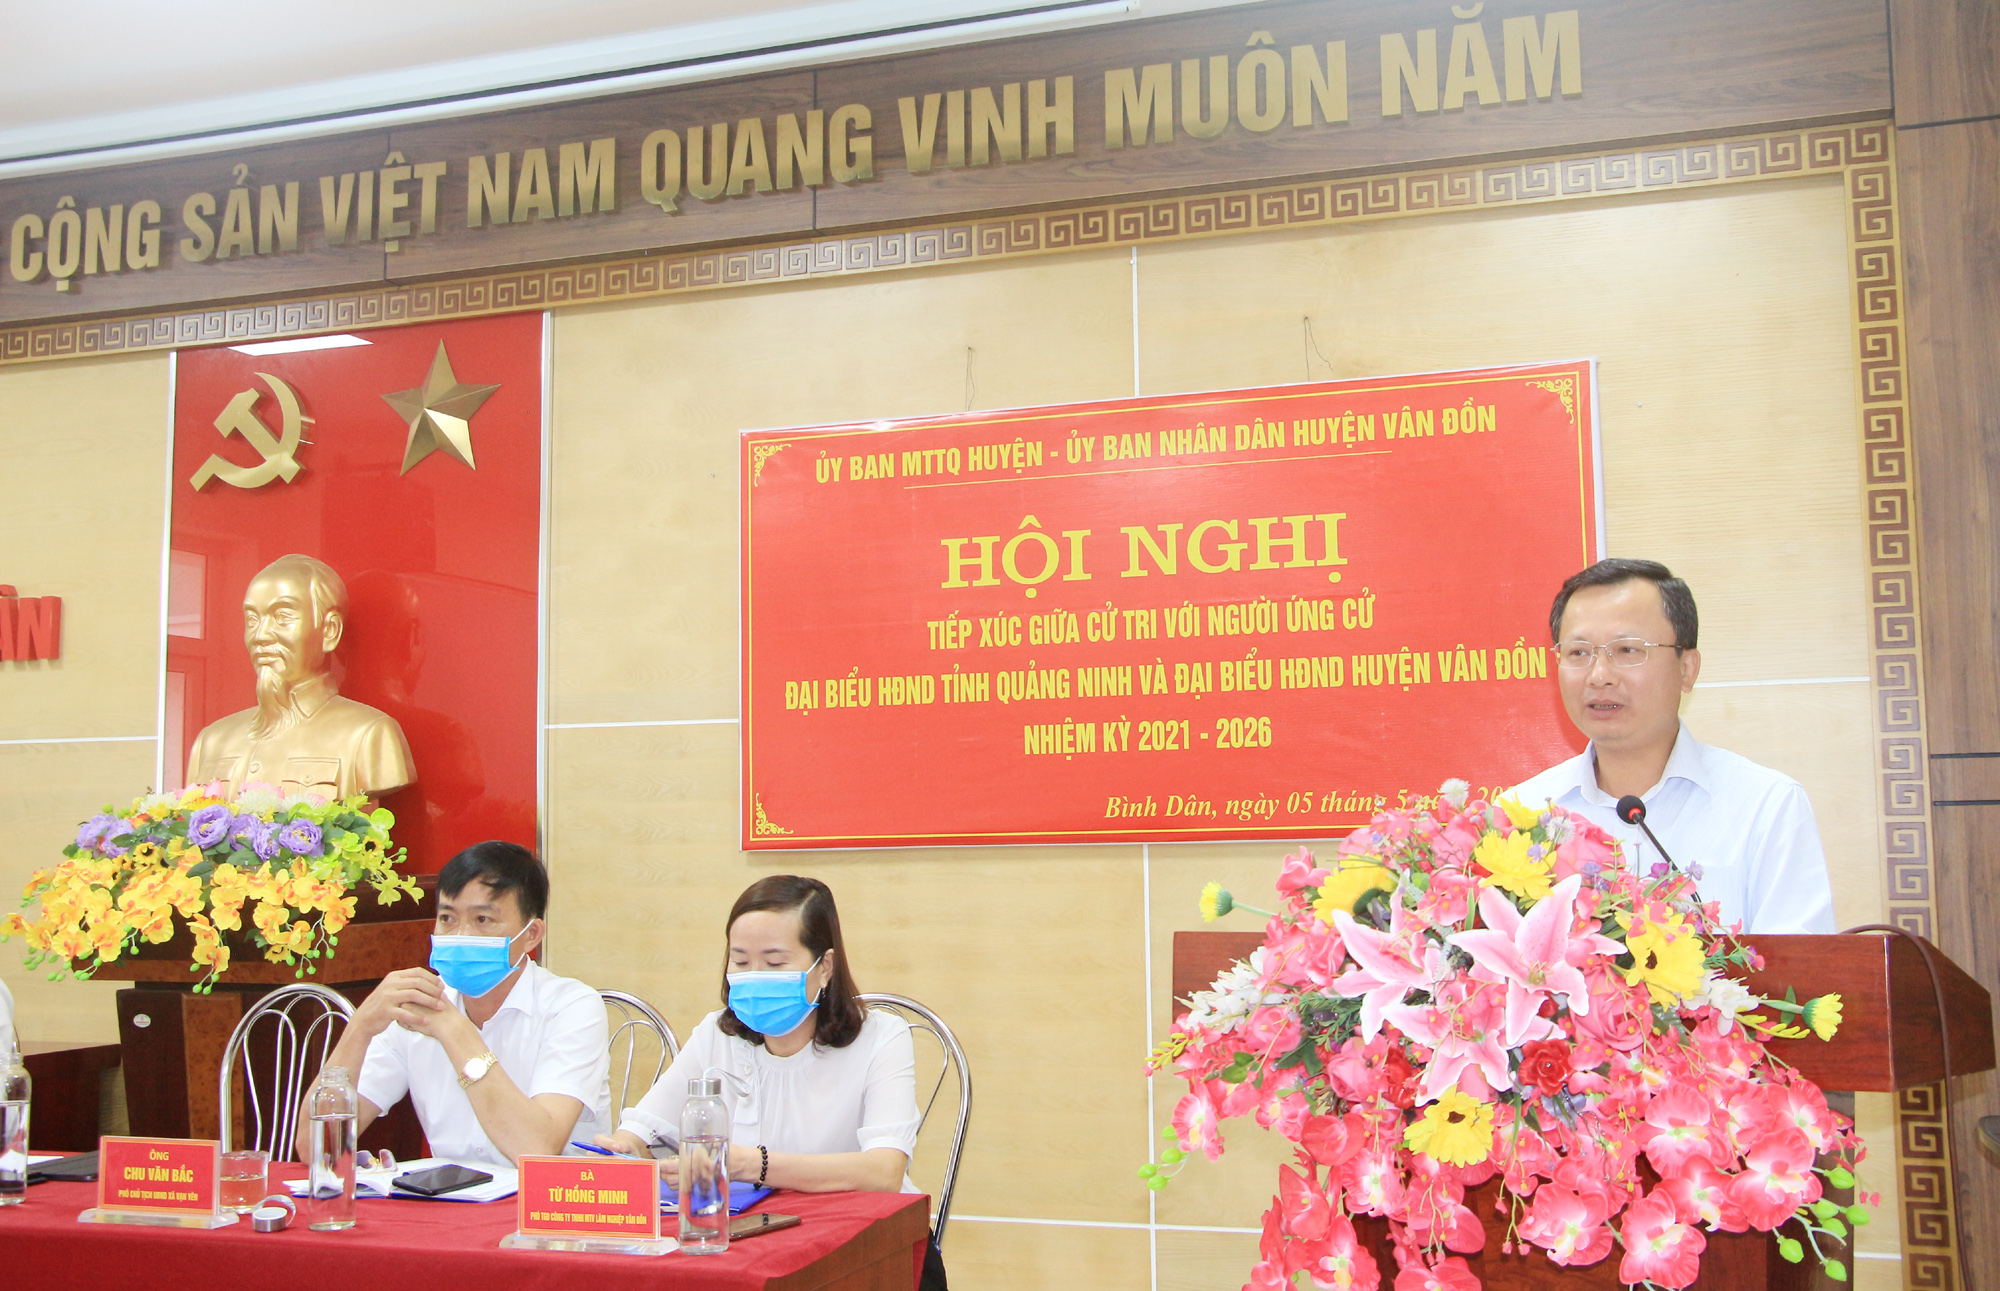 Đồng chí Cao Tường Huy, Phó Chủ tịch Thường trực UBND tỉnh, người ứng cử đại biểu HĐND tỉnh khóa XIV nhiệm kỳ 2021-2026 tại huyện Vân Đồn, phát biểu tại hội nghị.